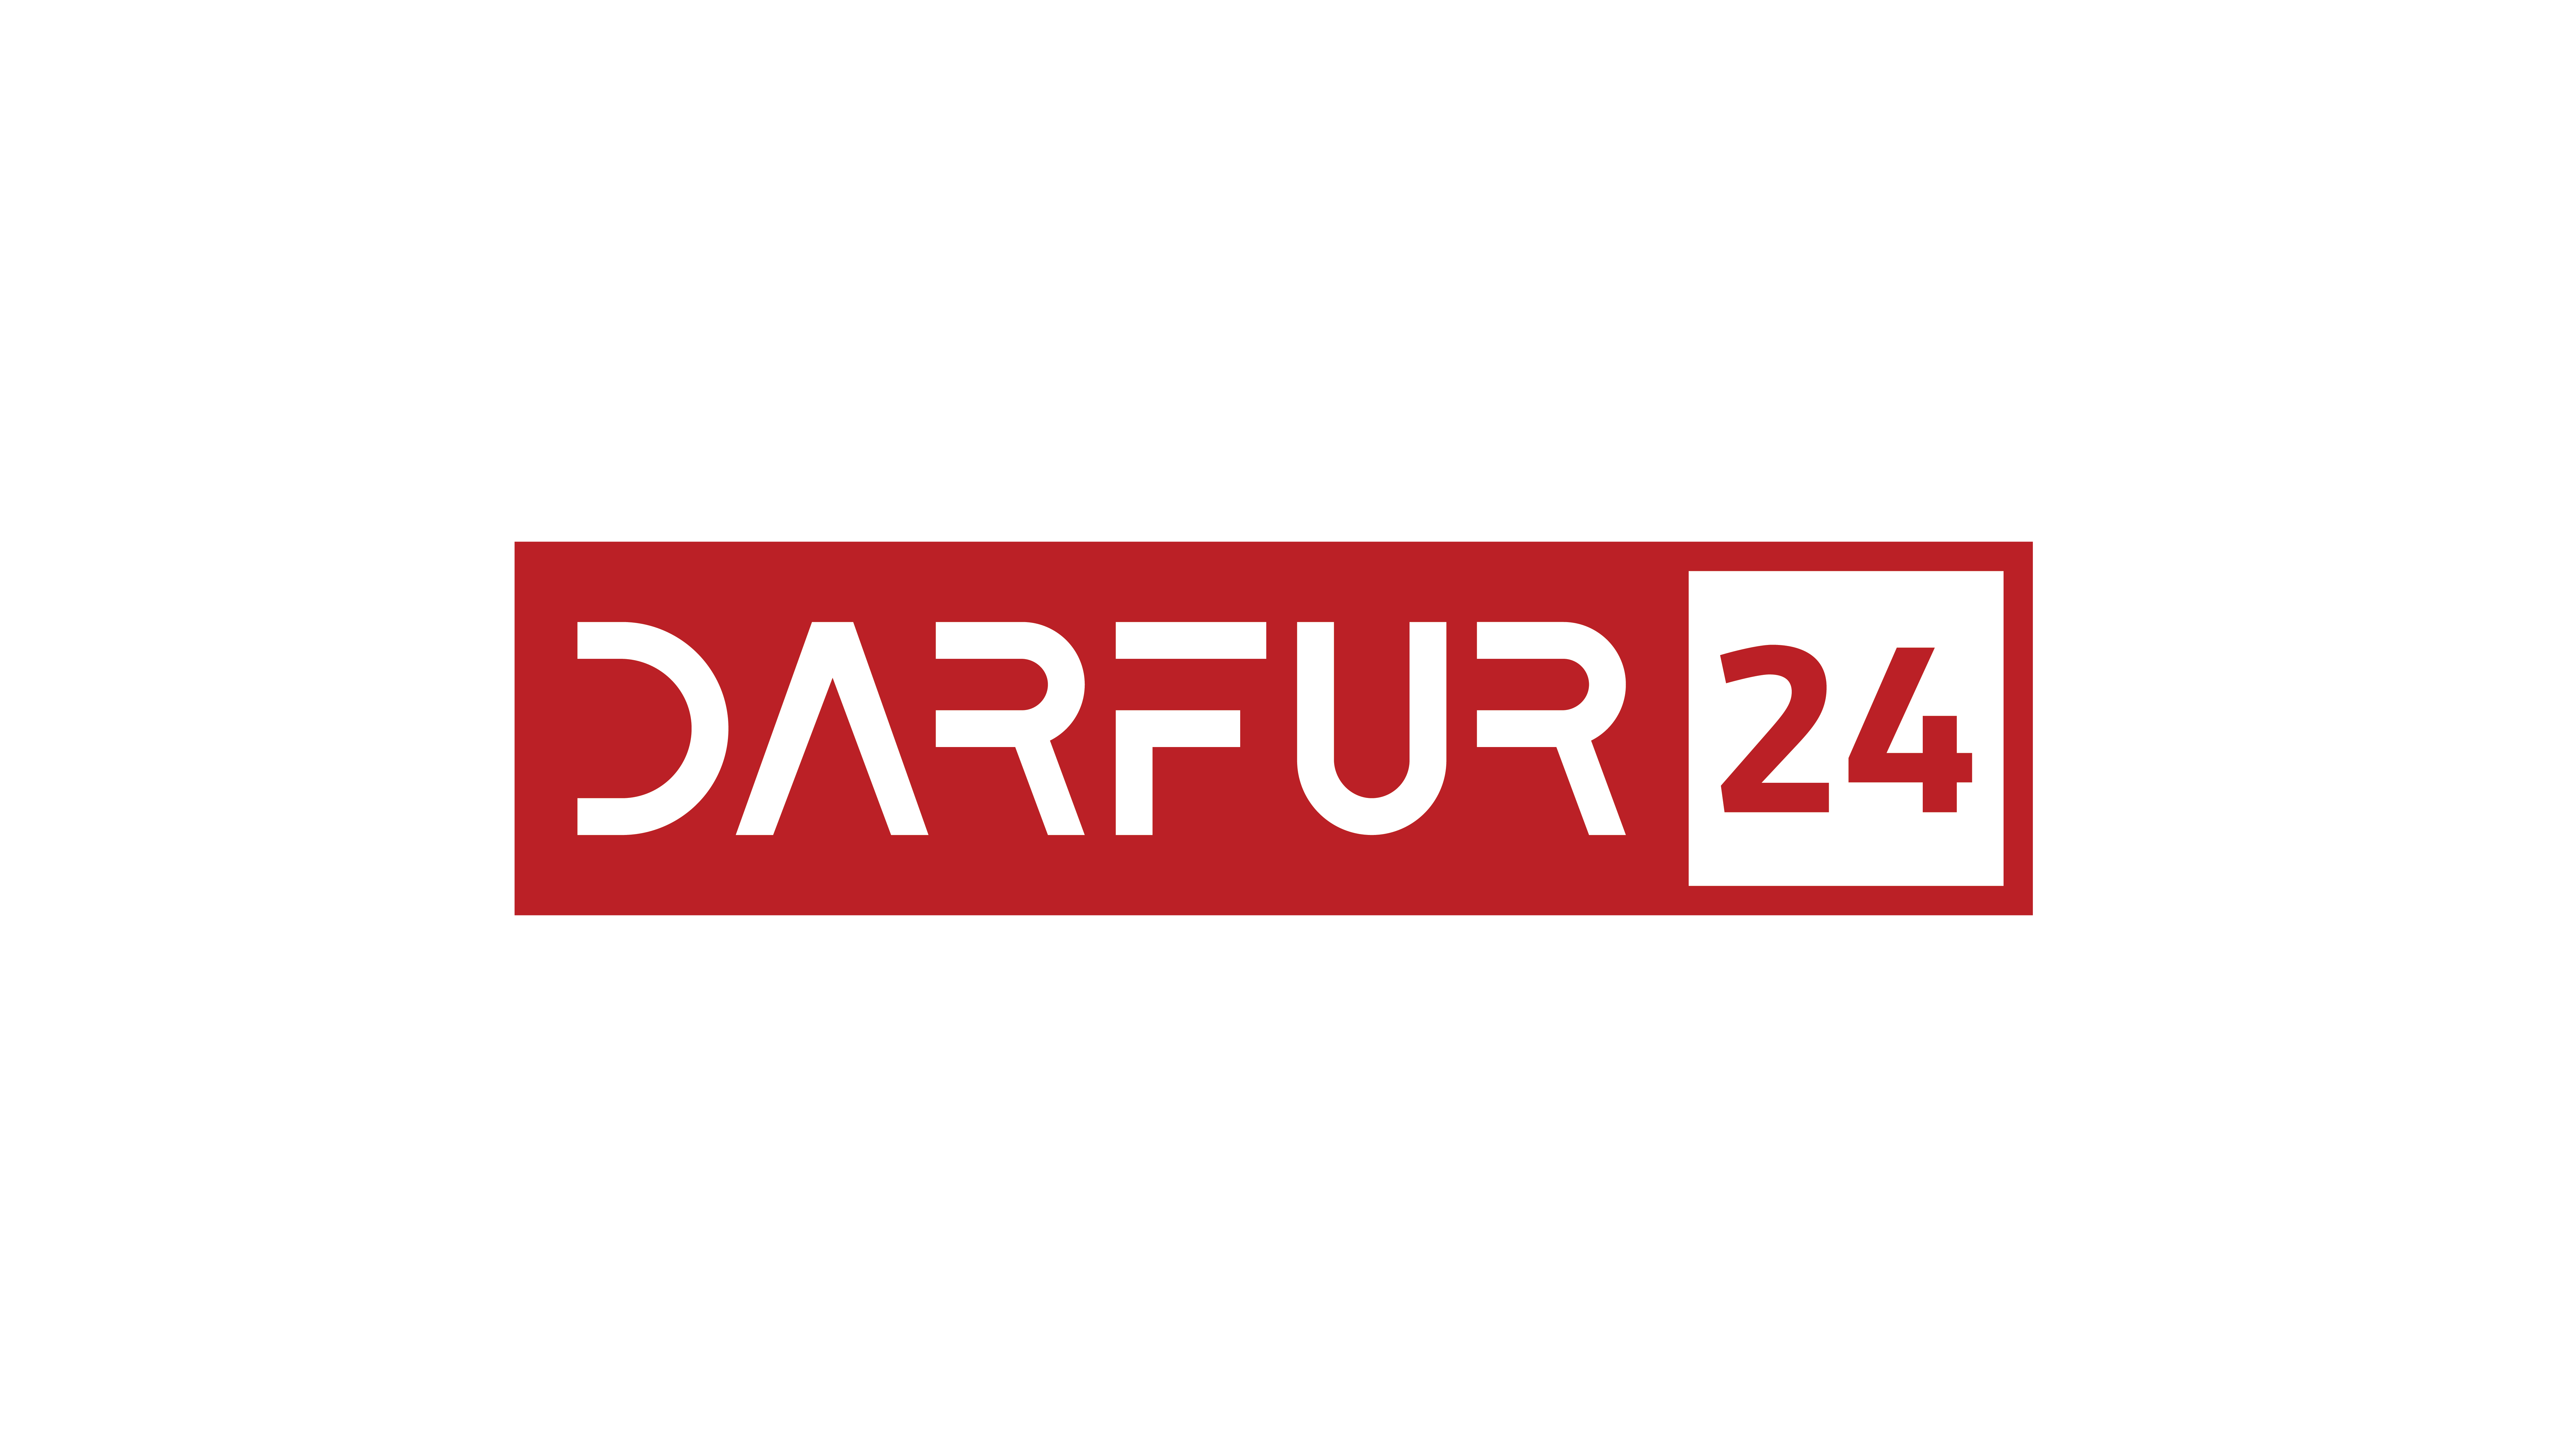 Darfur24 News Website